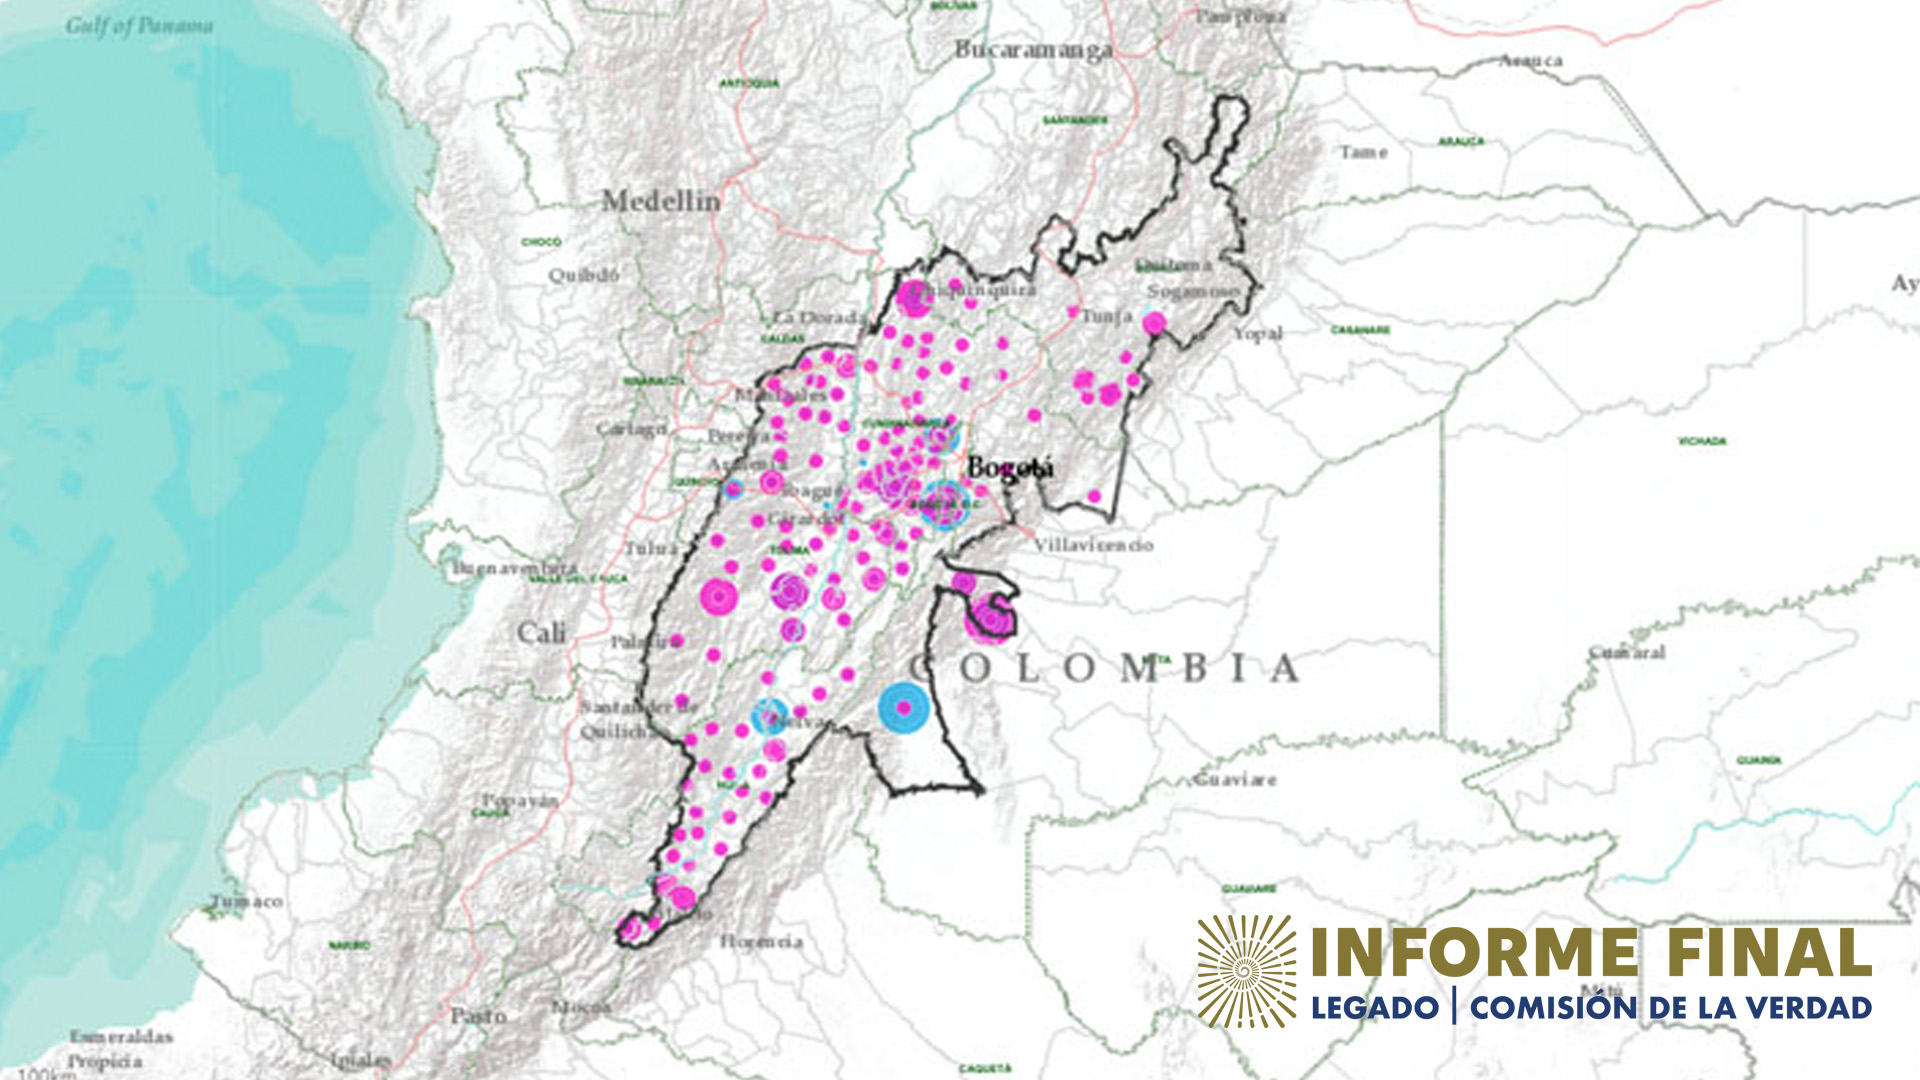 Mapa de la región Centro de Colombia con señalamientos de violencias contra miembros de la UP.